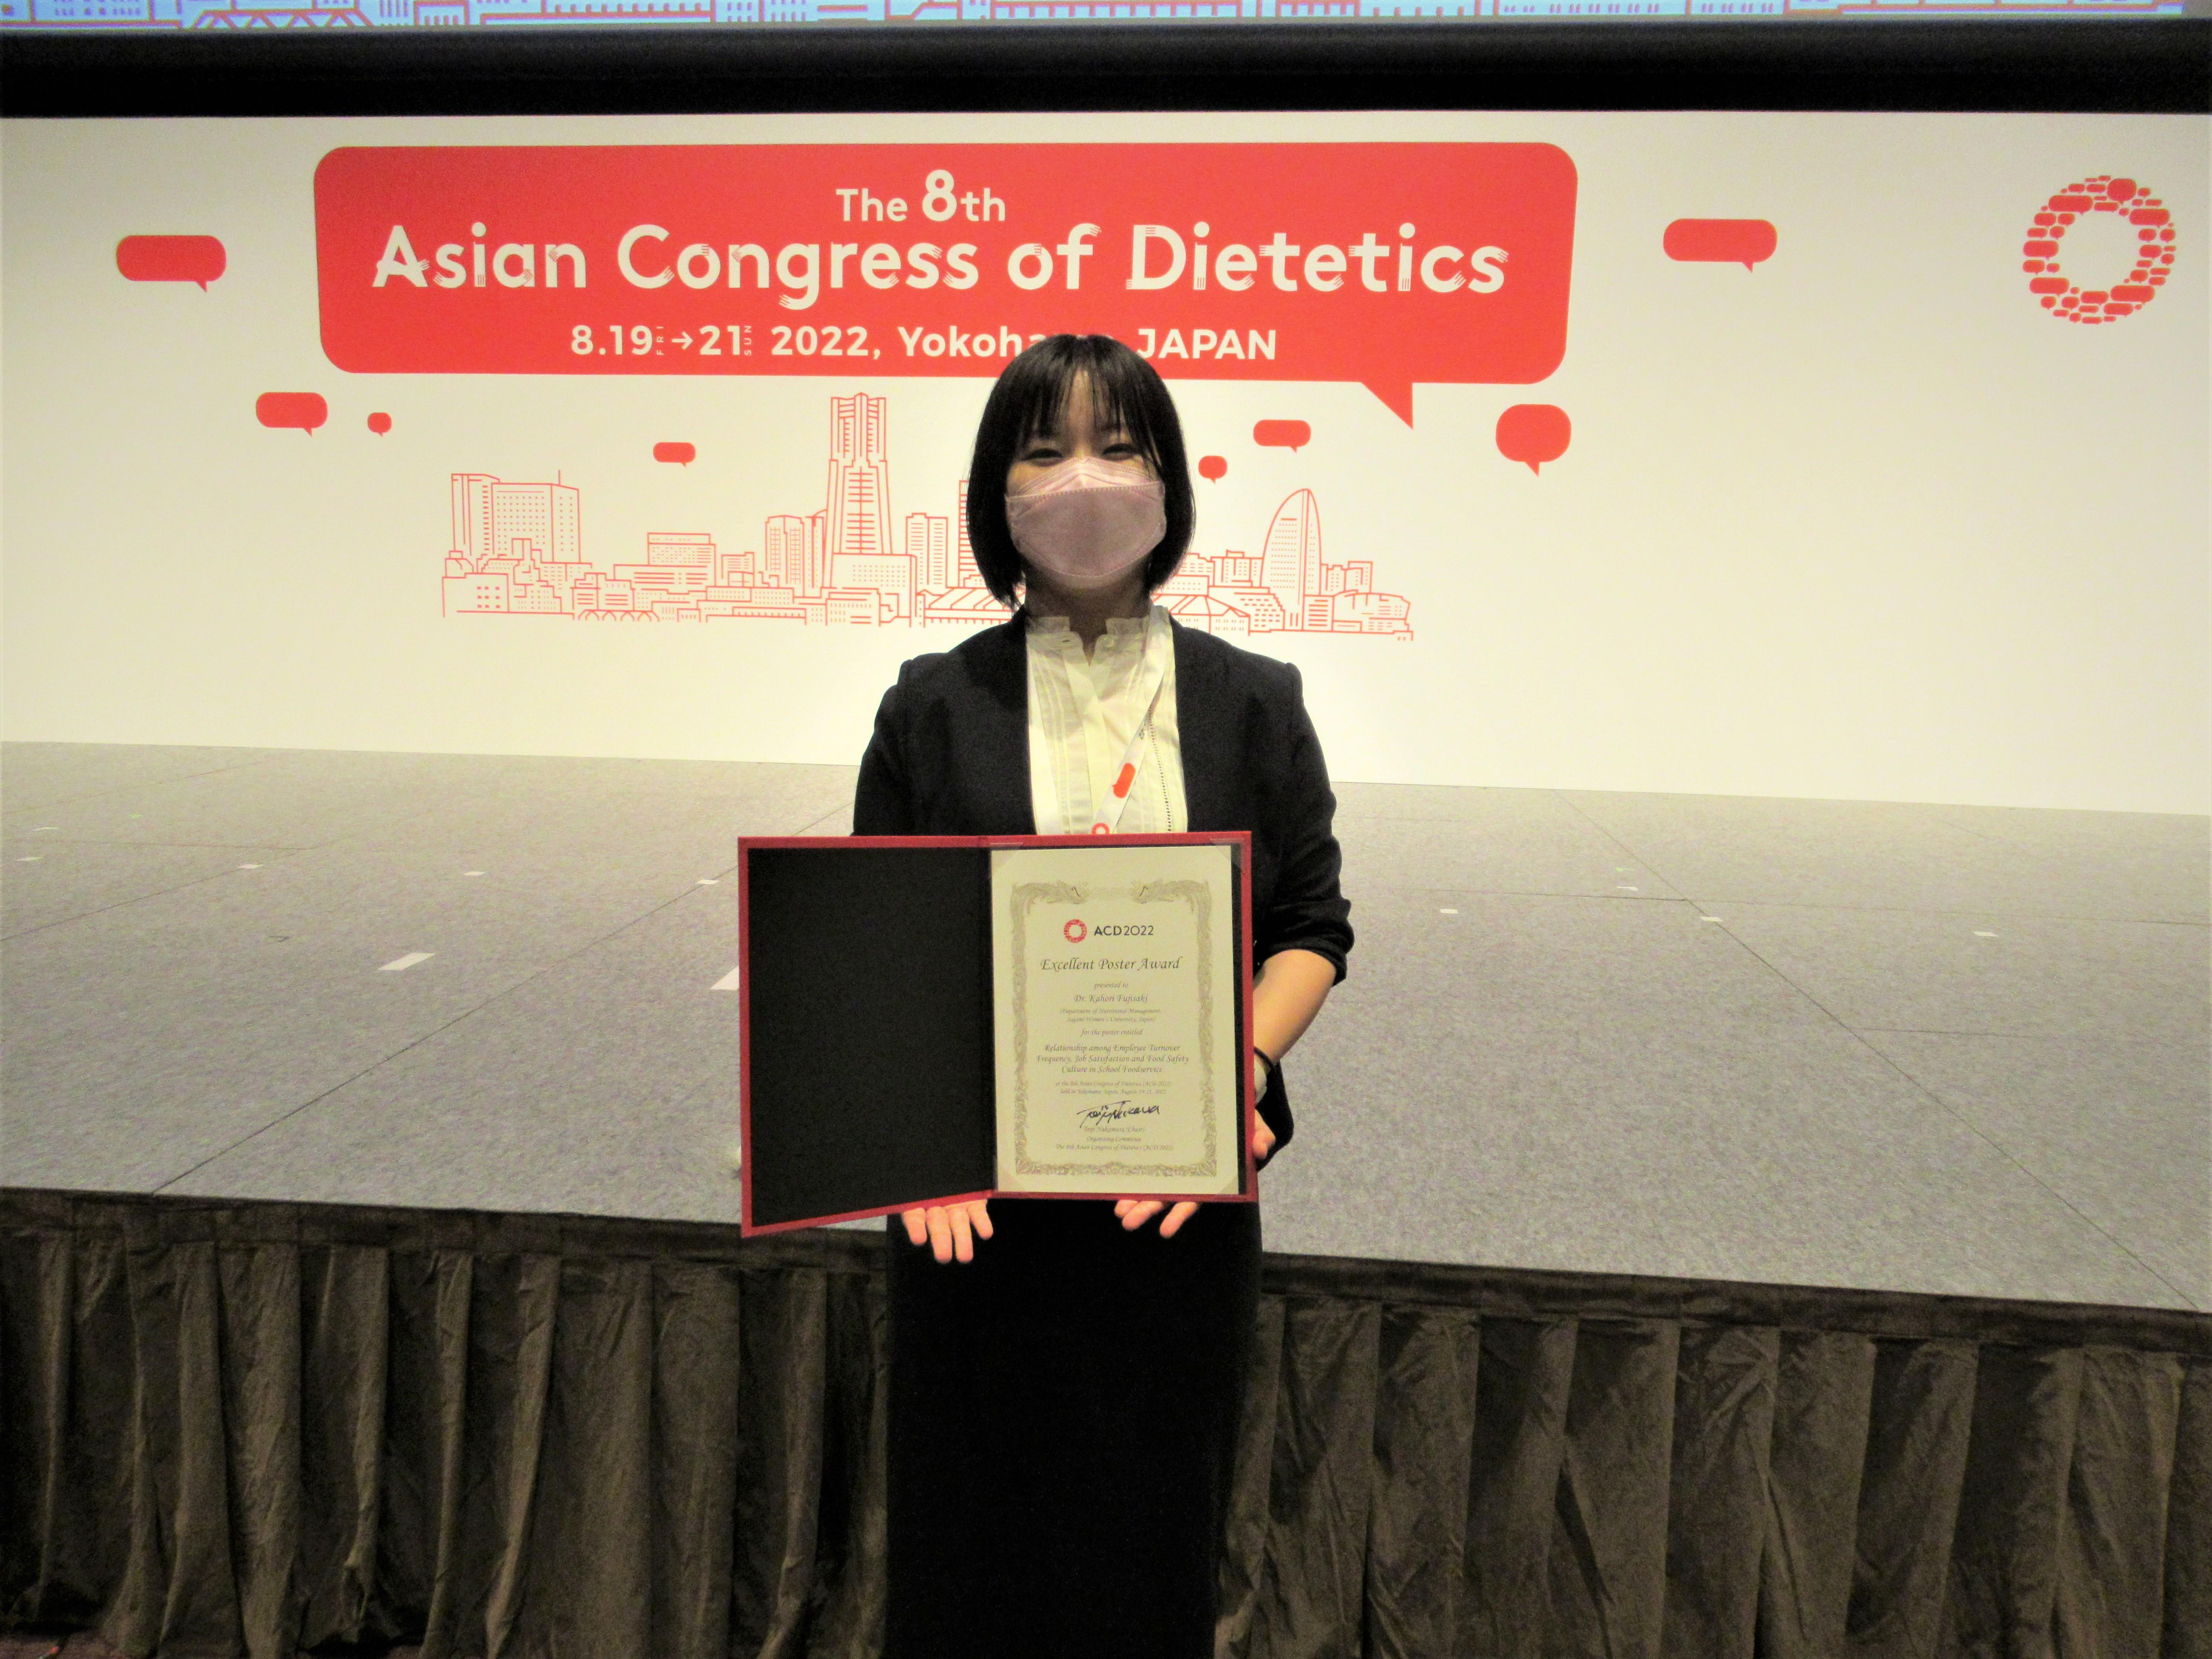 相模女子大学 栄養科学部管理栄養学科 藤崎香帆里助教が第8回アジア栄養士会議にてExcellent Poster Awardを受賞しました